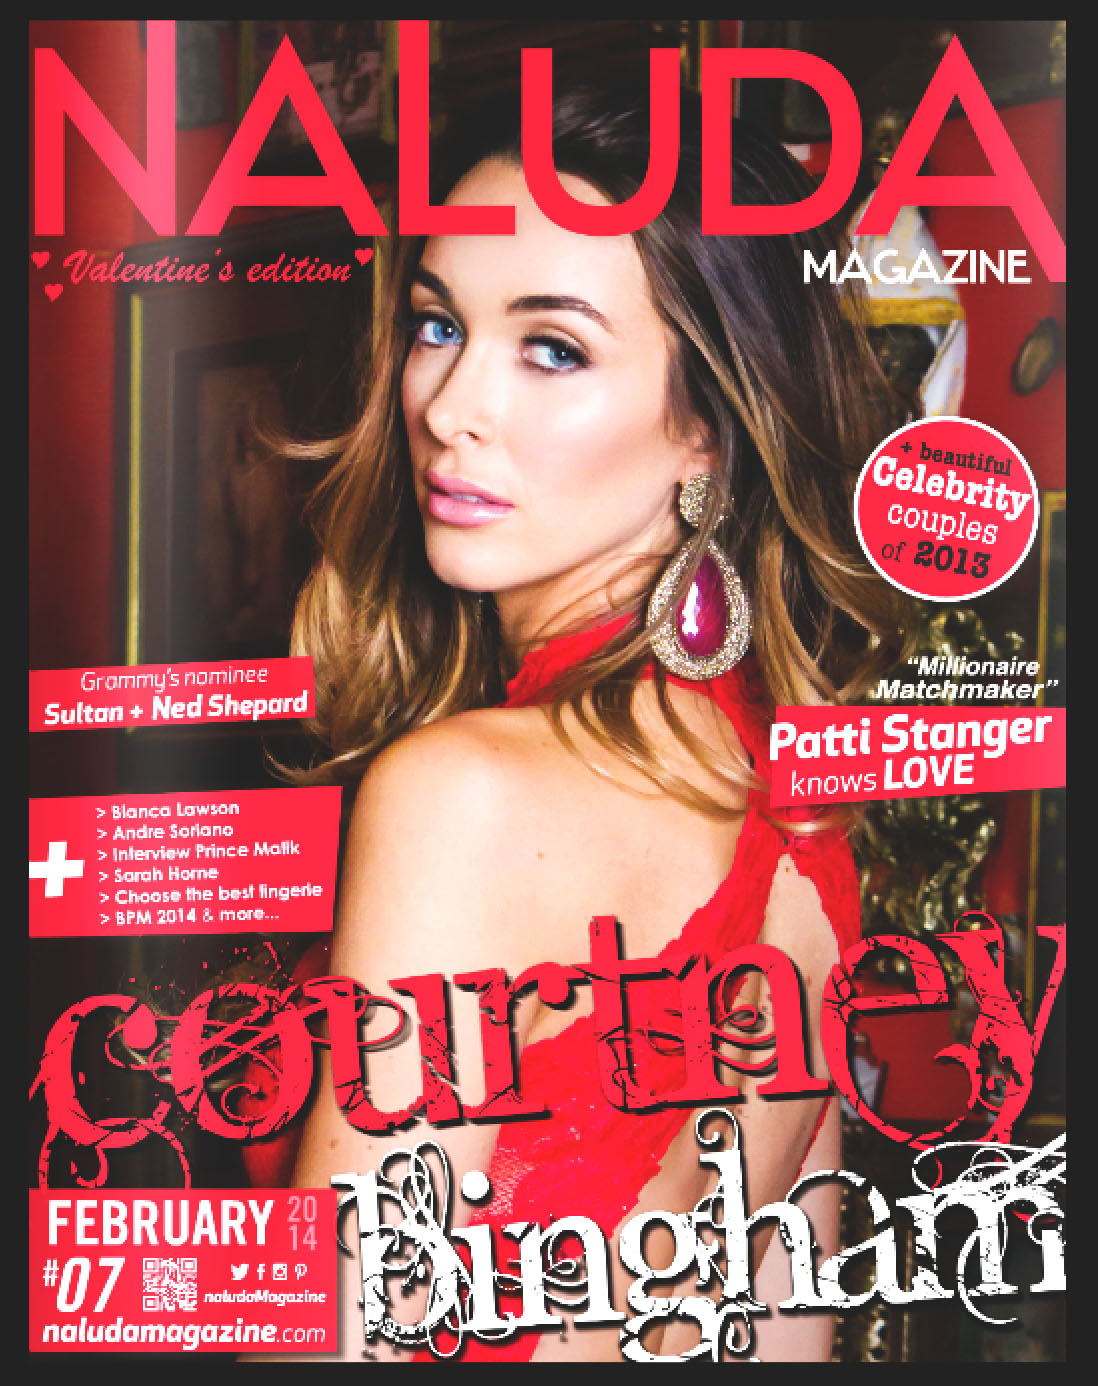 Naluda Magazine February 2013